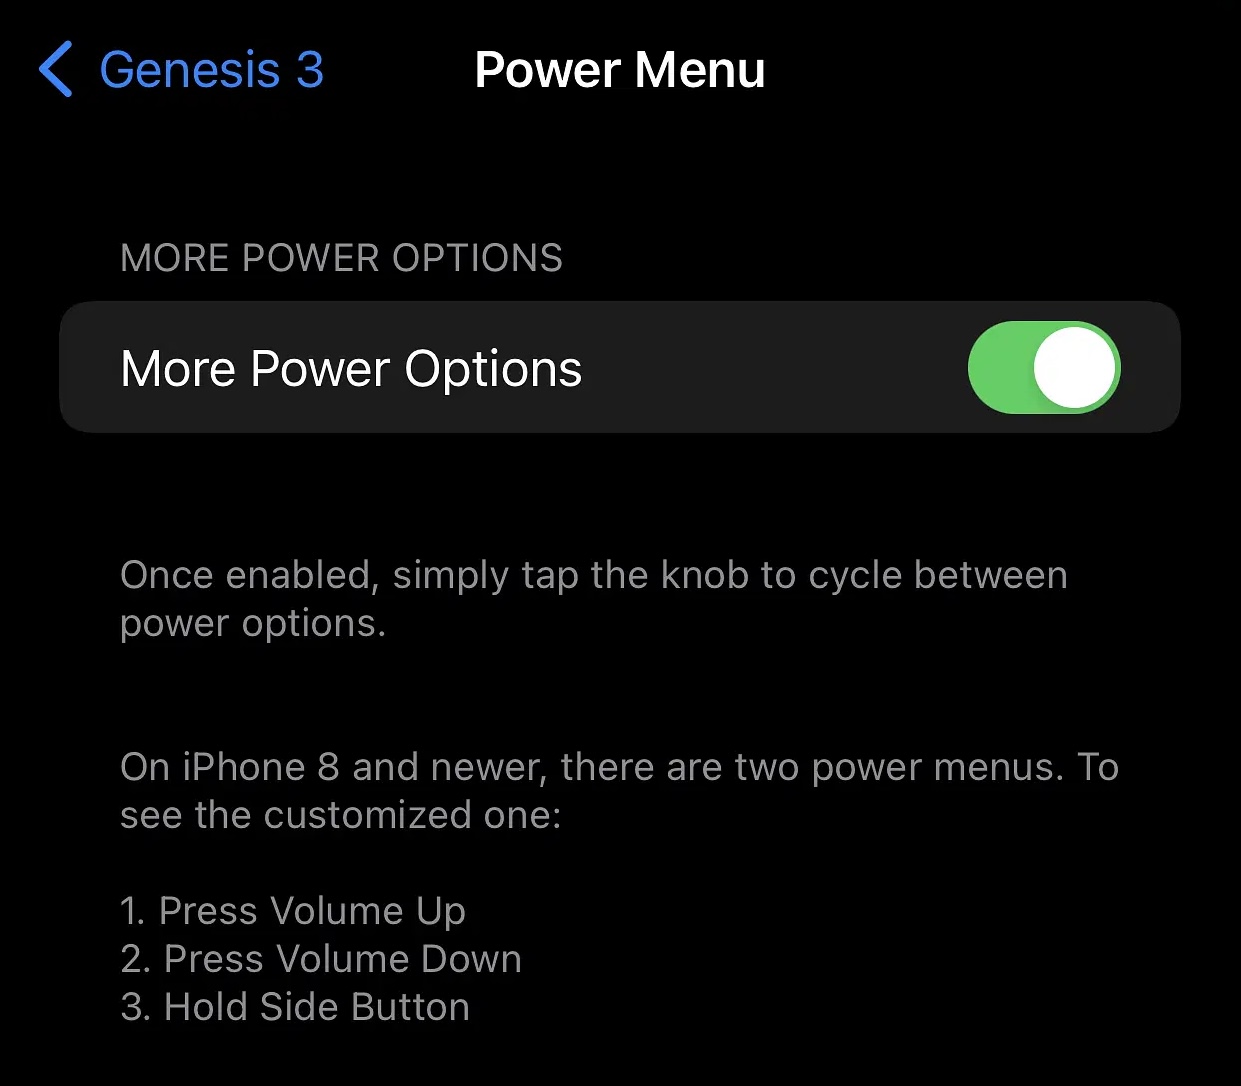 Genesis 3 Power Menu options.